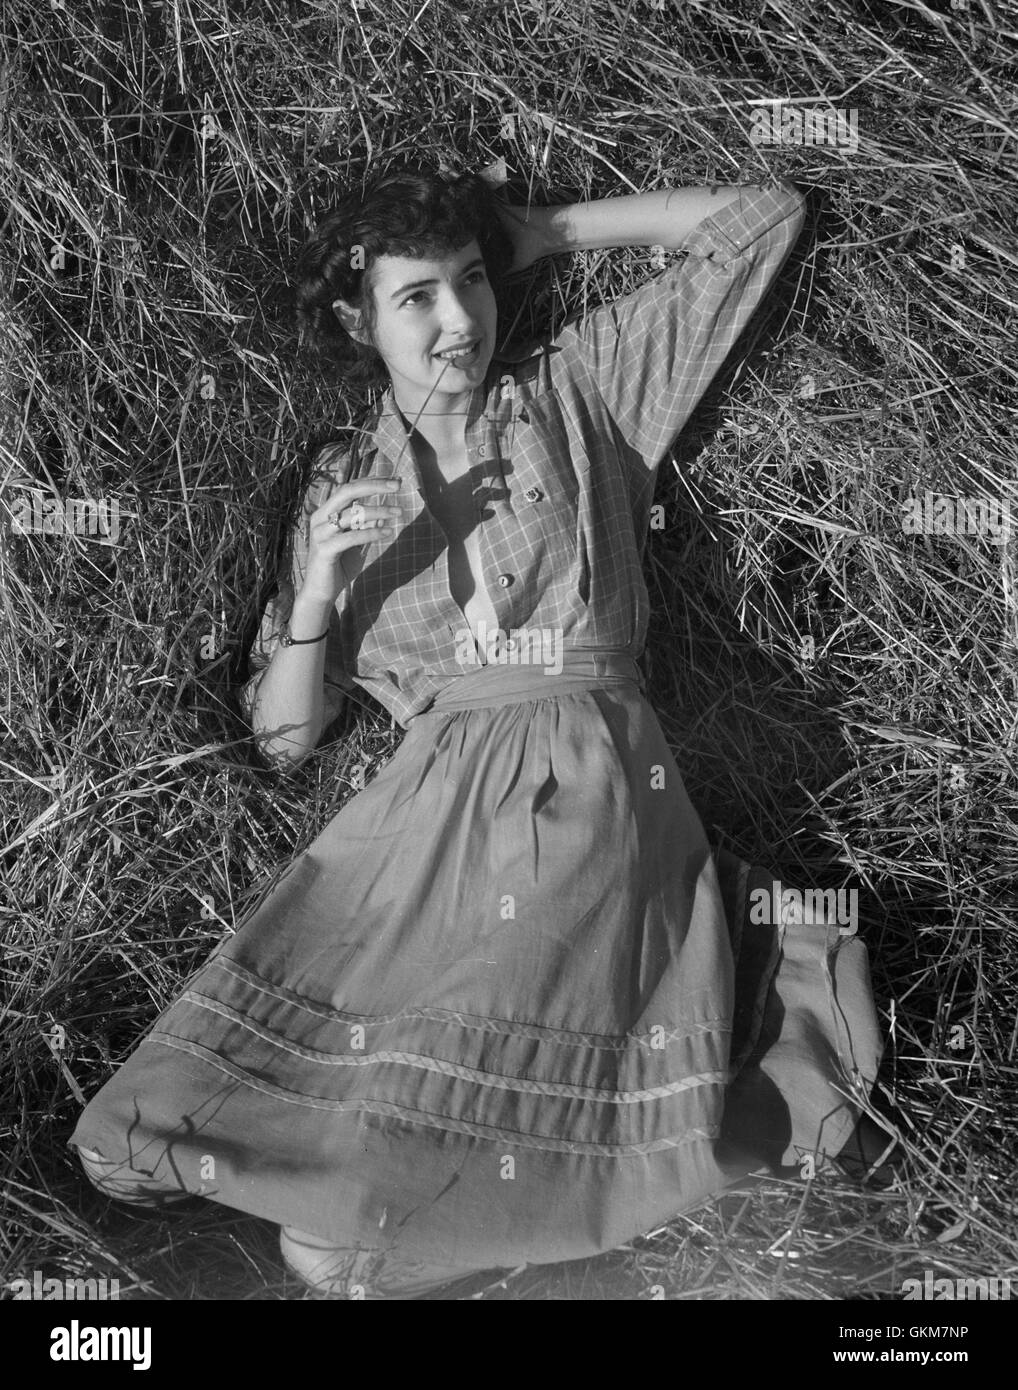 Marcia Legere, également connu sous le nom de Marcia Legere Binns Binns acteur Edward après son mariage. Cette photo a été prise quelque temps de récolte de 1946. Banque D'Images